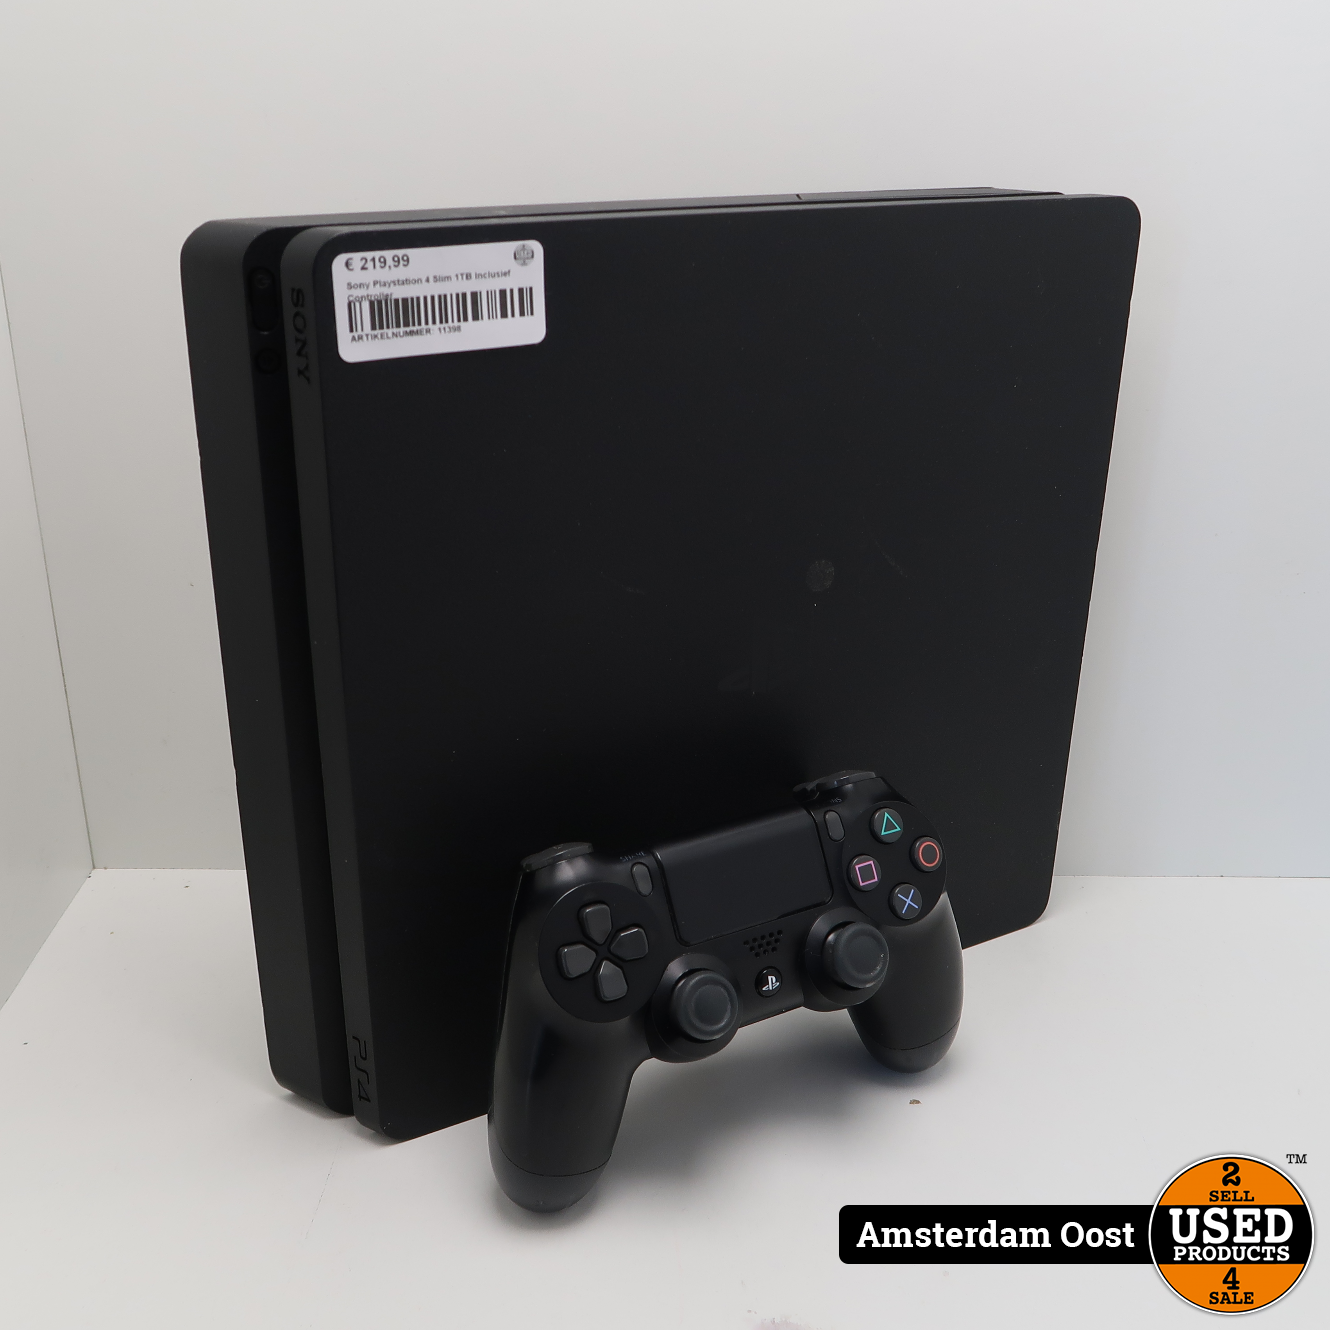 Diplomaat Nederigheid klei Sony Playstation 4 Slim 1TB Black | in Redelijke Staat - Used Products  Amsterdam Oost